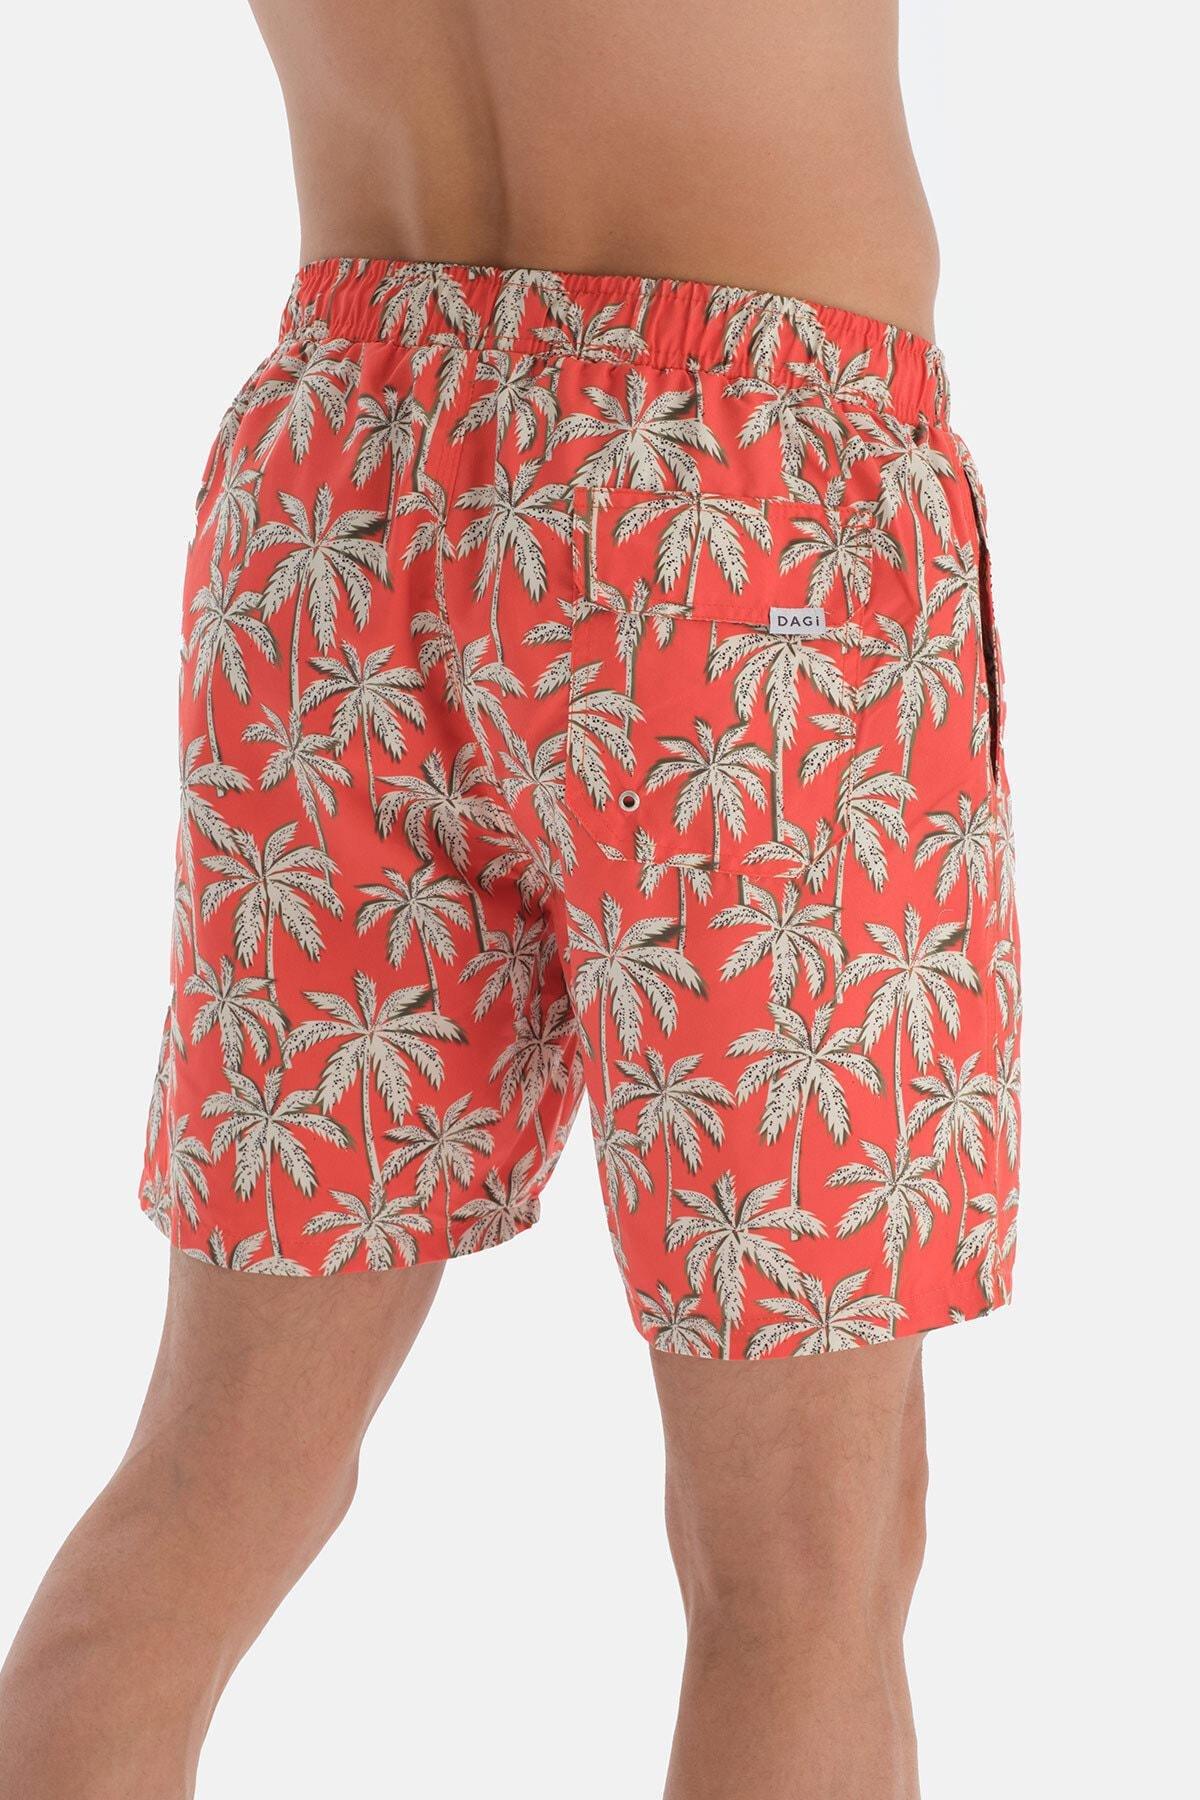 Dagi - Orange Palm Patterned Medium Shorts